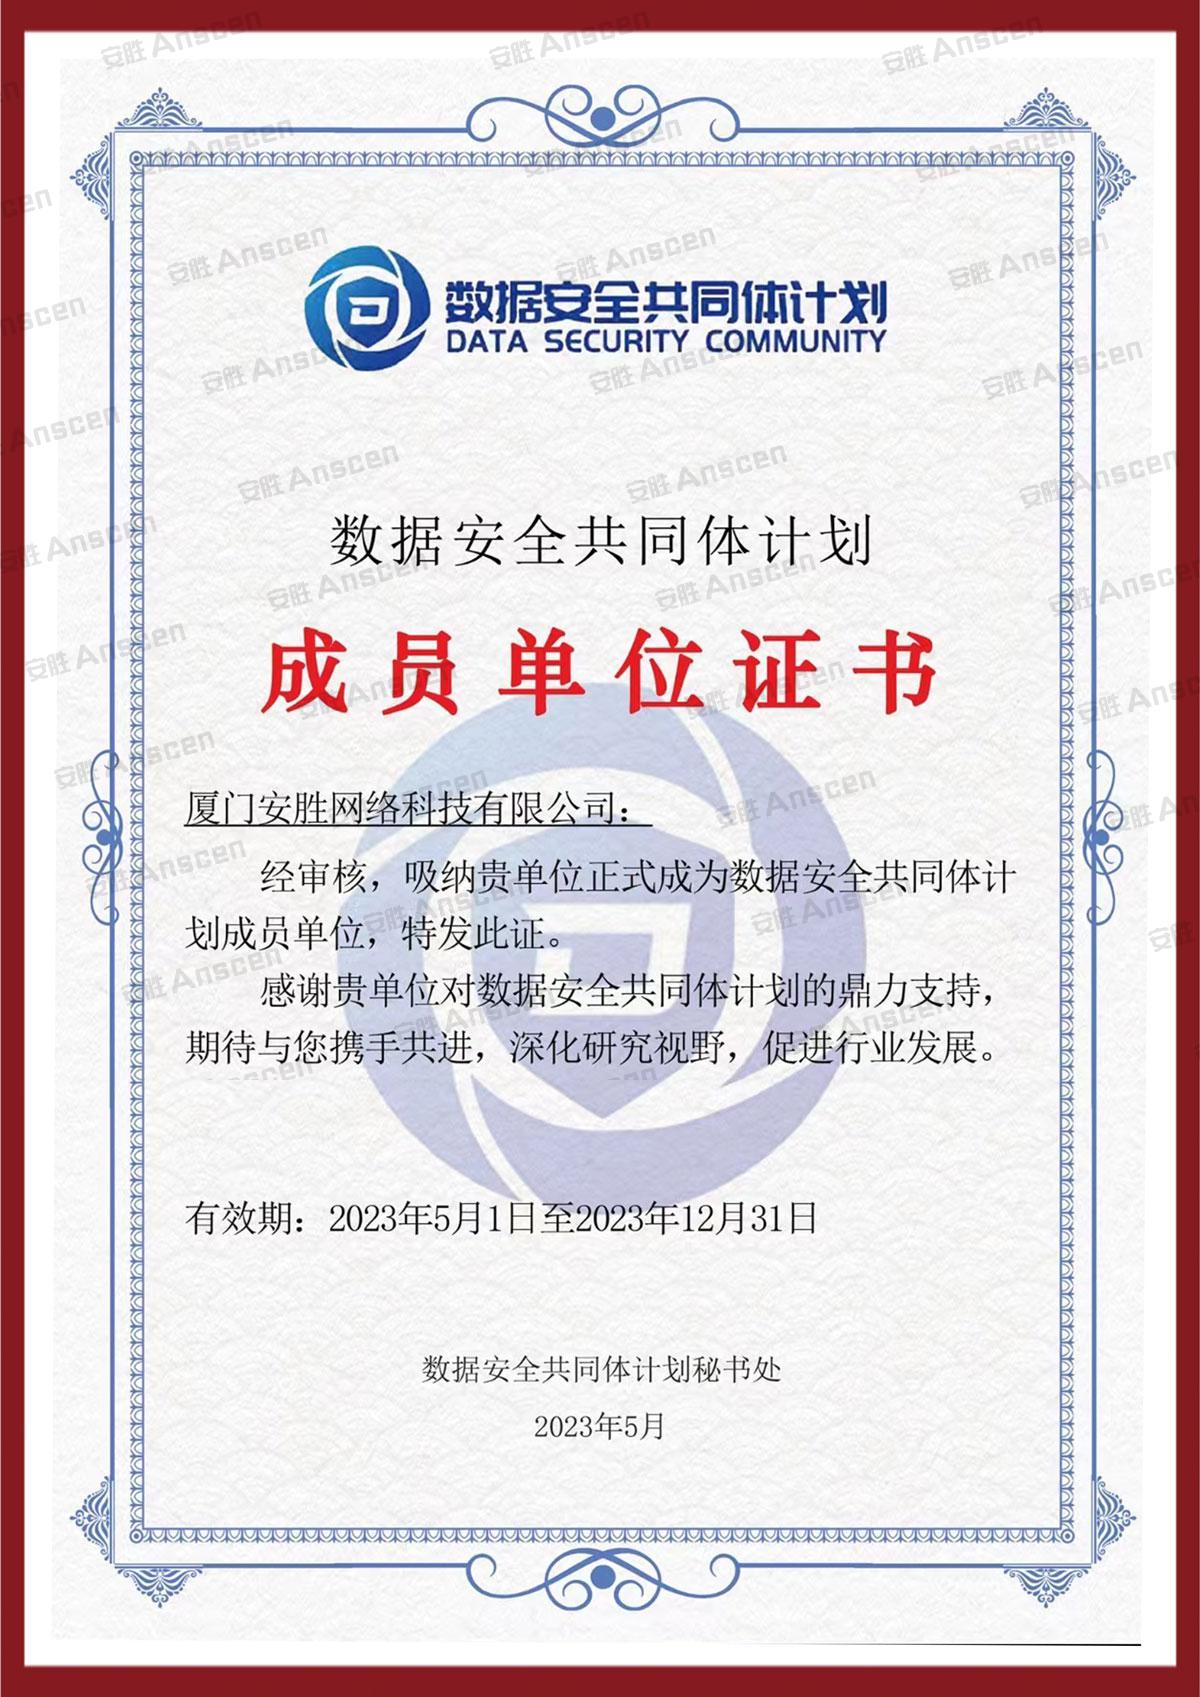 中国信通院“数据安全共同体计划”成员单位